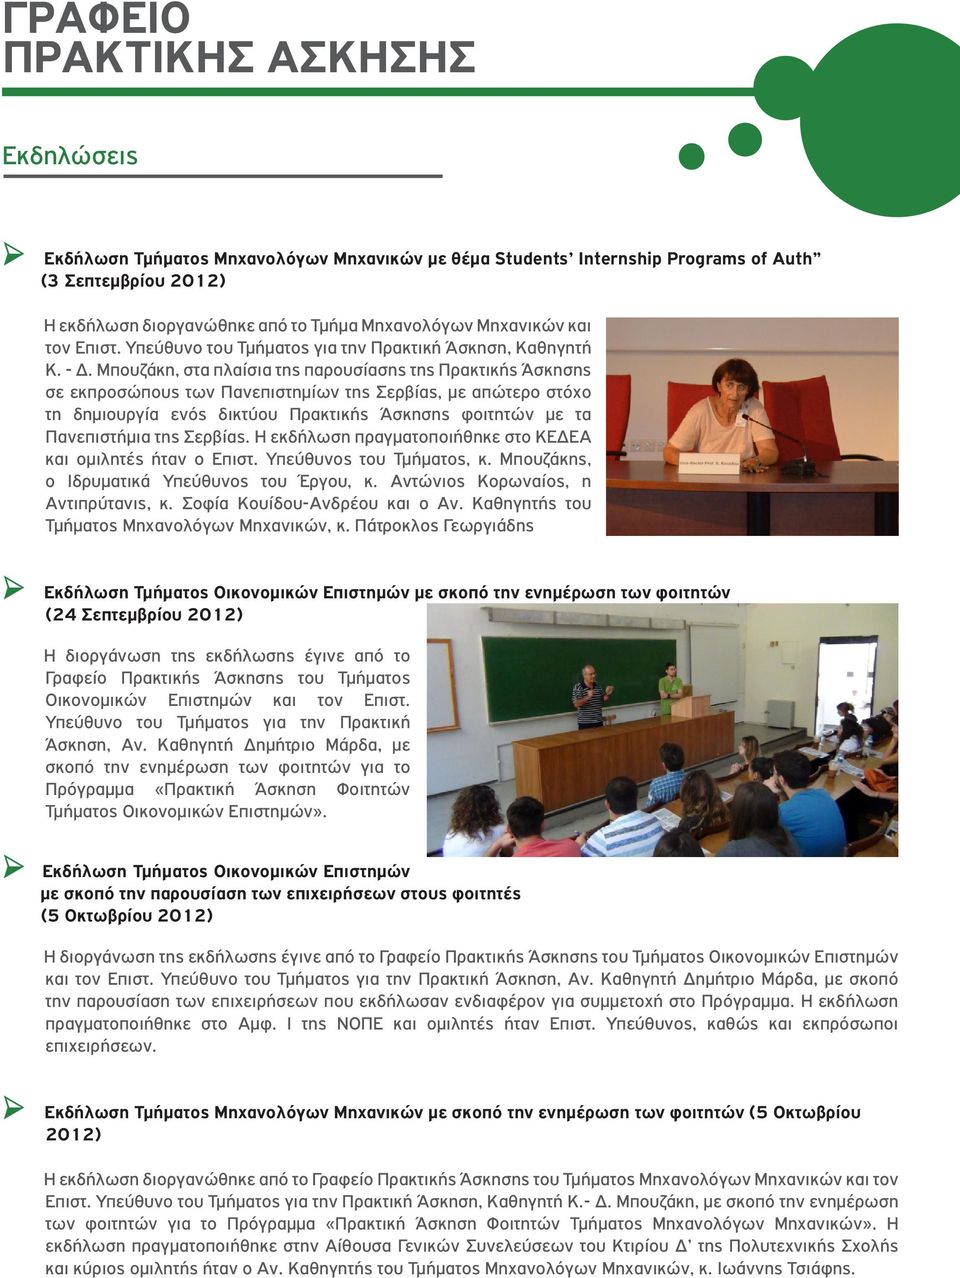 Μπουζάκη, στα πλαίσια της παρουσίασης της Πρακτικής Άσκησης σε εκπροσώπους των Πανεπιστημίων της Σερβίας, με απώτερο στόχο τη δημιουργία ενός δικτύου Πρακτικής Άσκησης φοιτητών με τα Πανεπιστήμια της